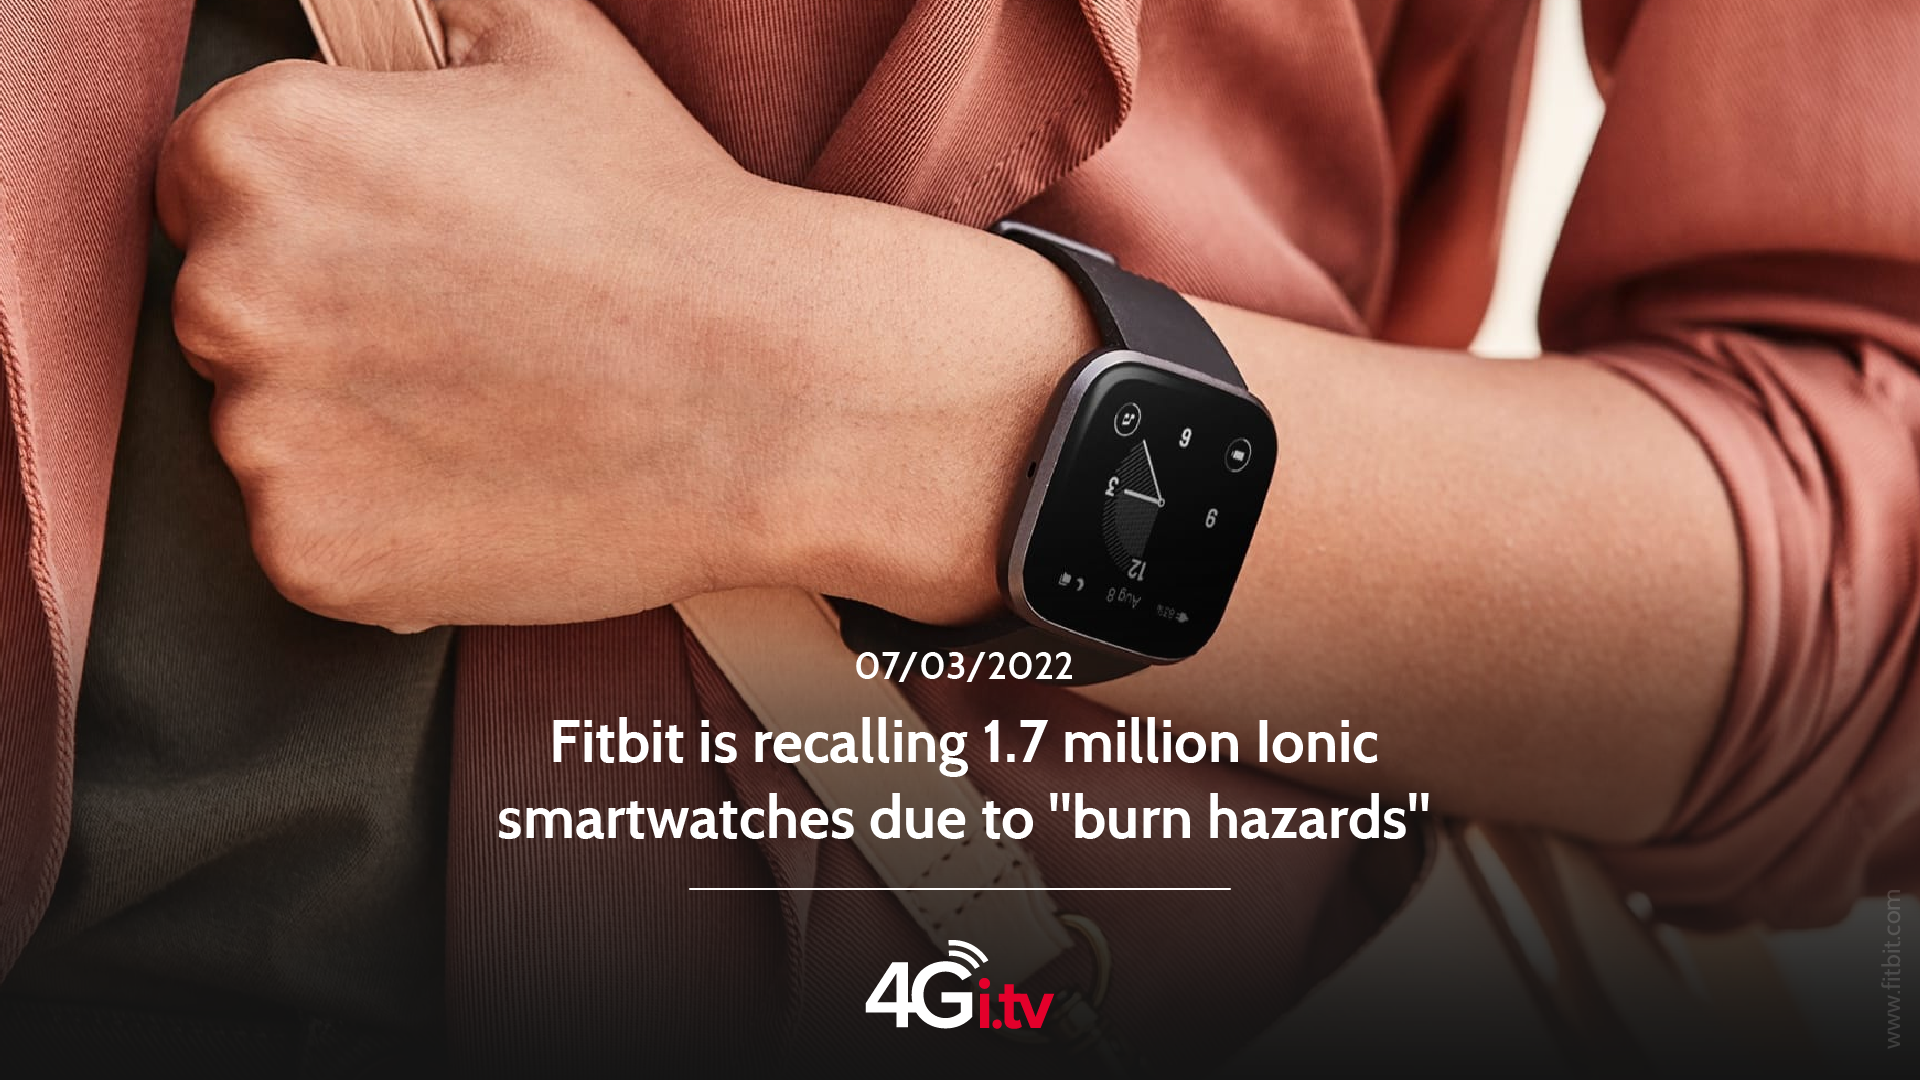 Подробнее о статье Fitbit is recalling 1.7 million Ionic smartwatches due to “burn hazards”